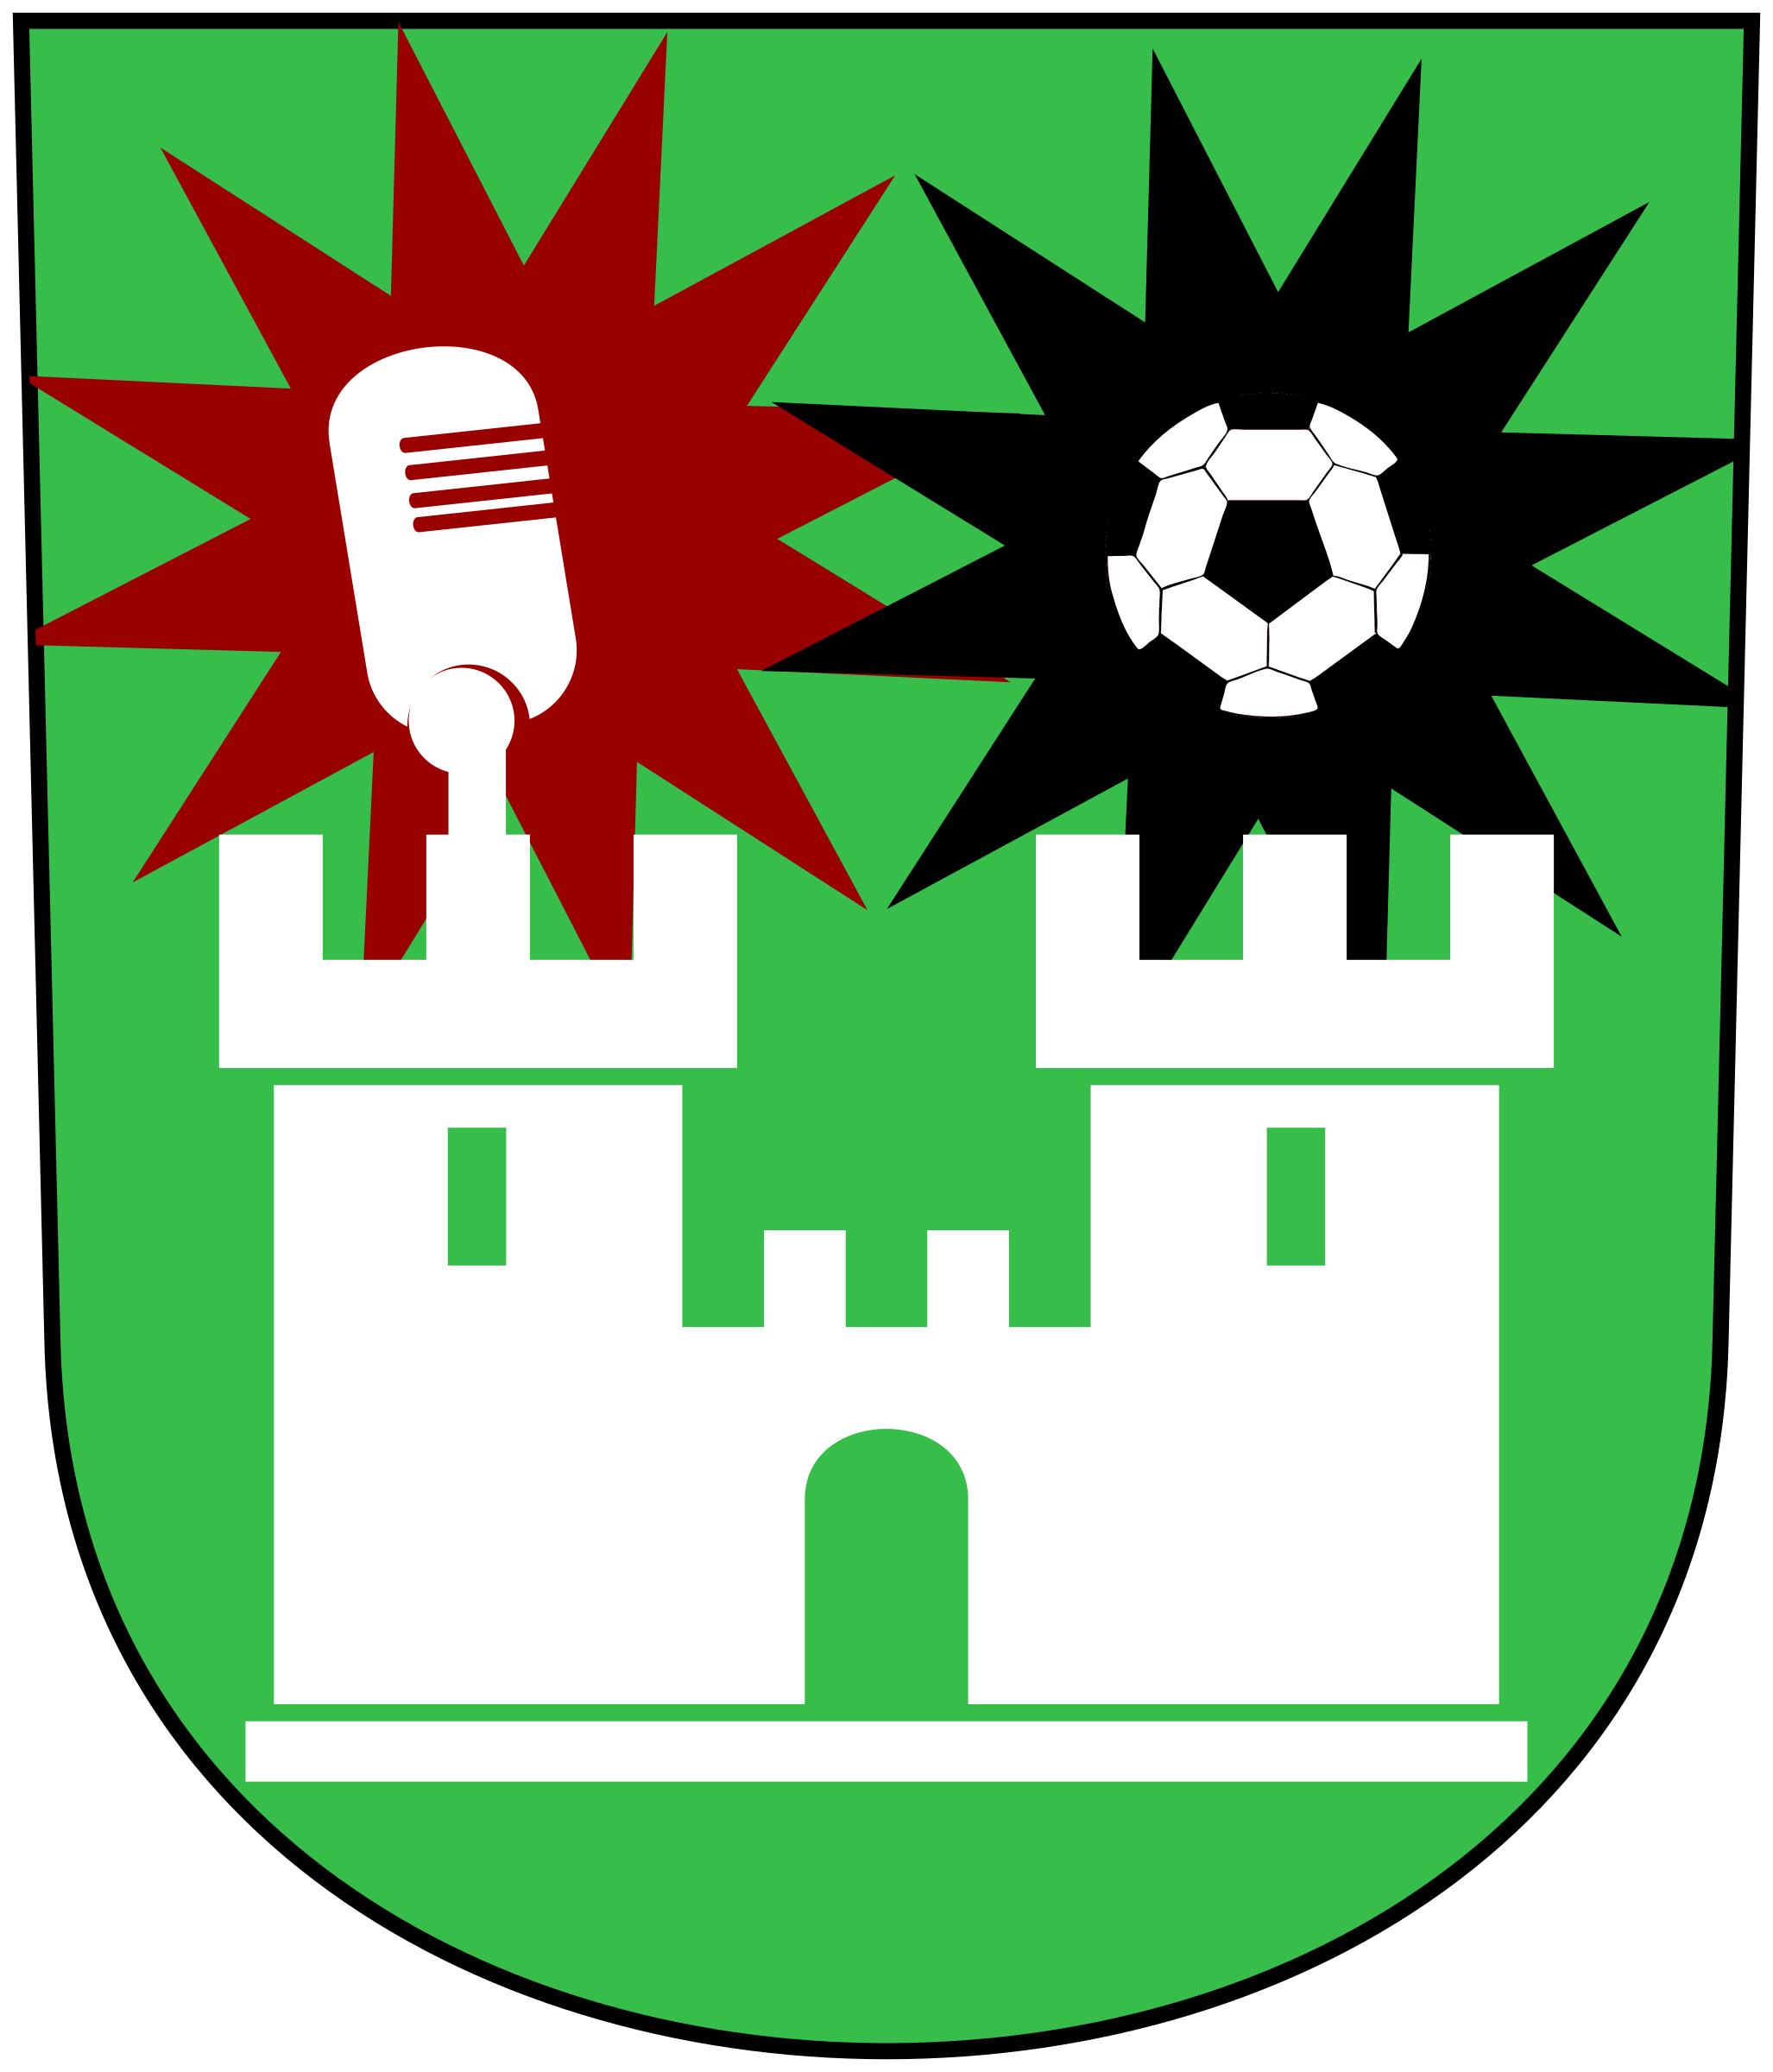 Castelo da Resistência icons